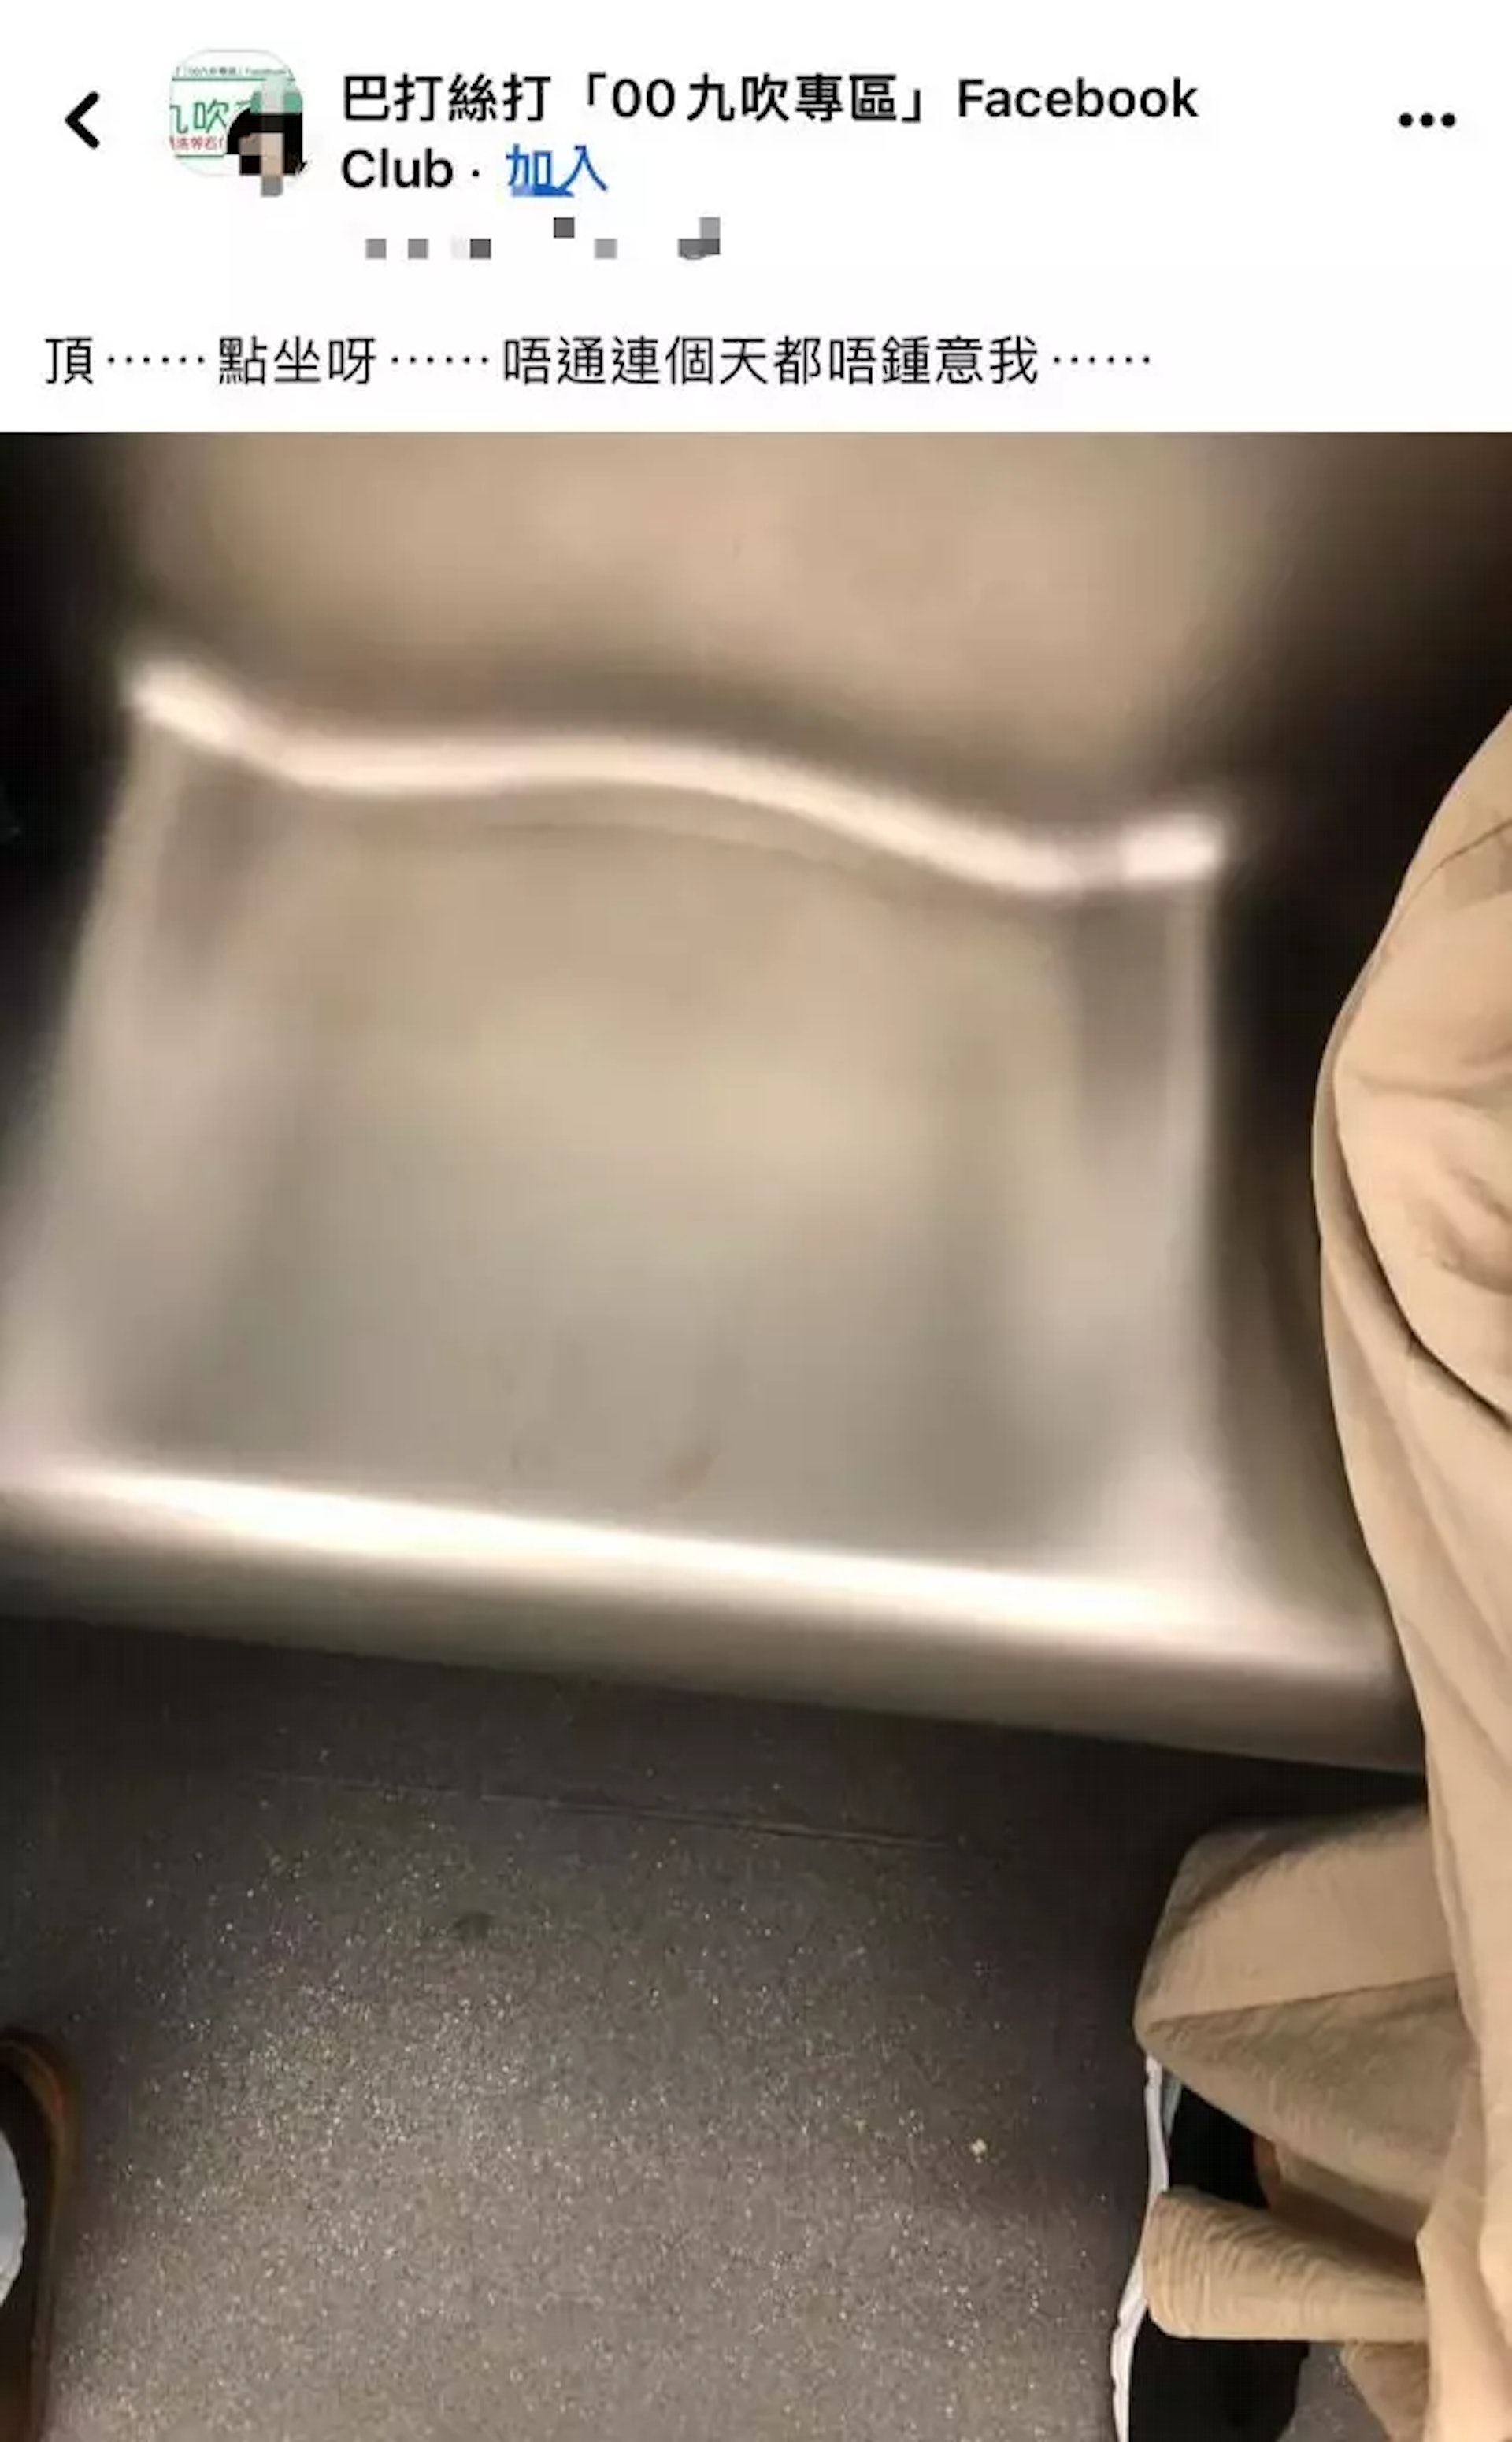 圖中是一張無人坐的港鐵座位，而座位上遺留微微紅色及啡色的污跡， 疑似是女生的月經血跡。（FACEBOOK@「巴打絲打「00九吹專區」）